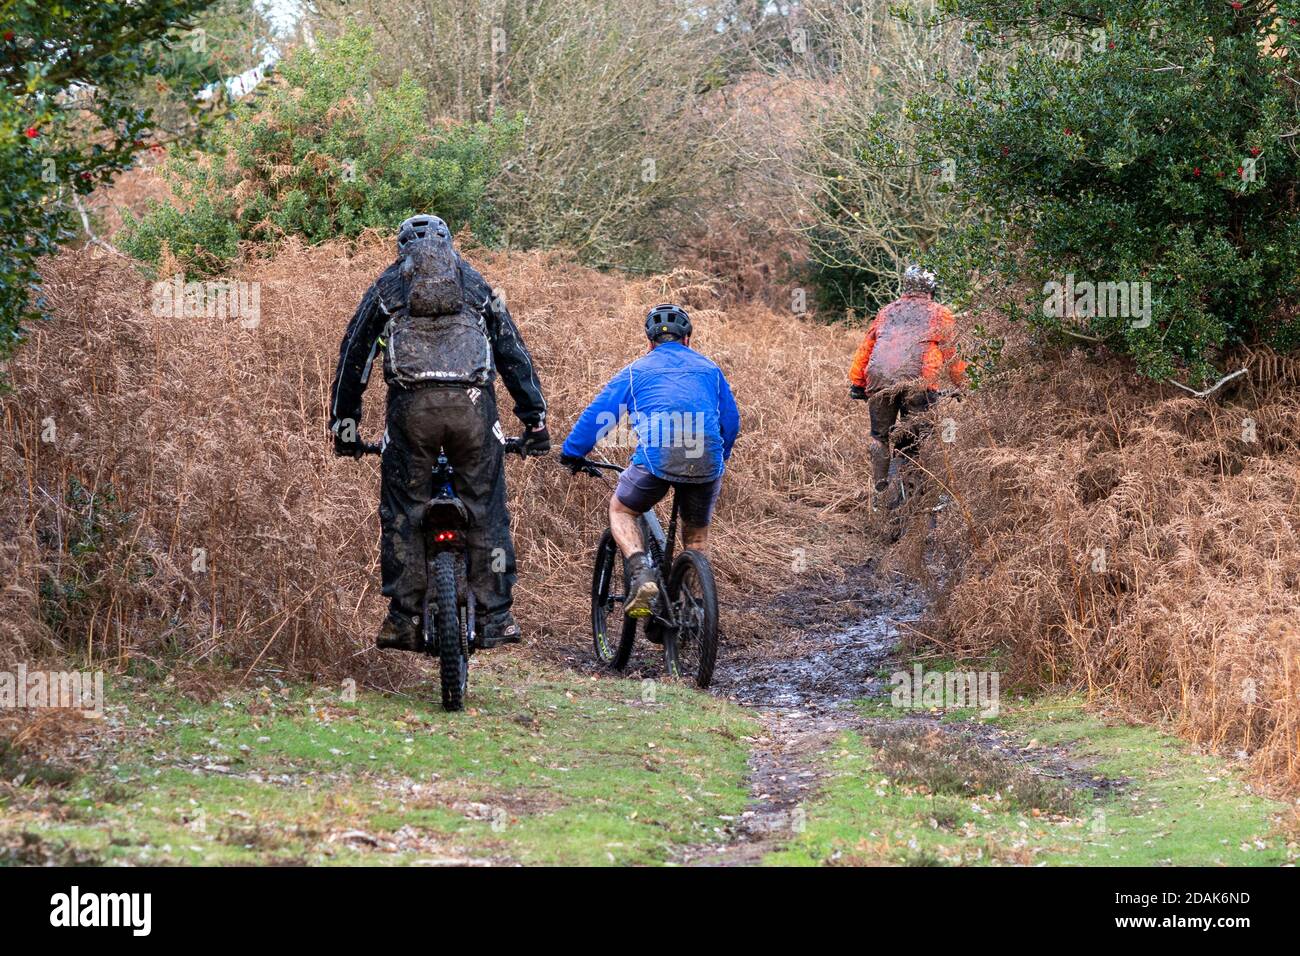 Drei Männer Radfahrer auf Elektrofahrrädern fahren durch schlammige Landschaften, New Forest, Hampshire Countryside, Großbritannien, November Stockfoto